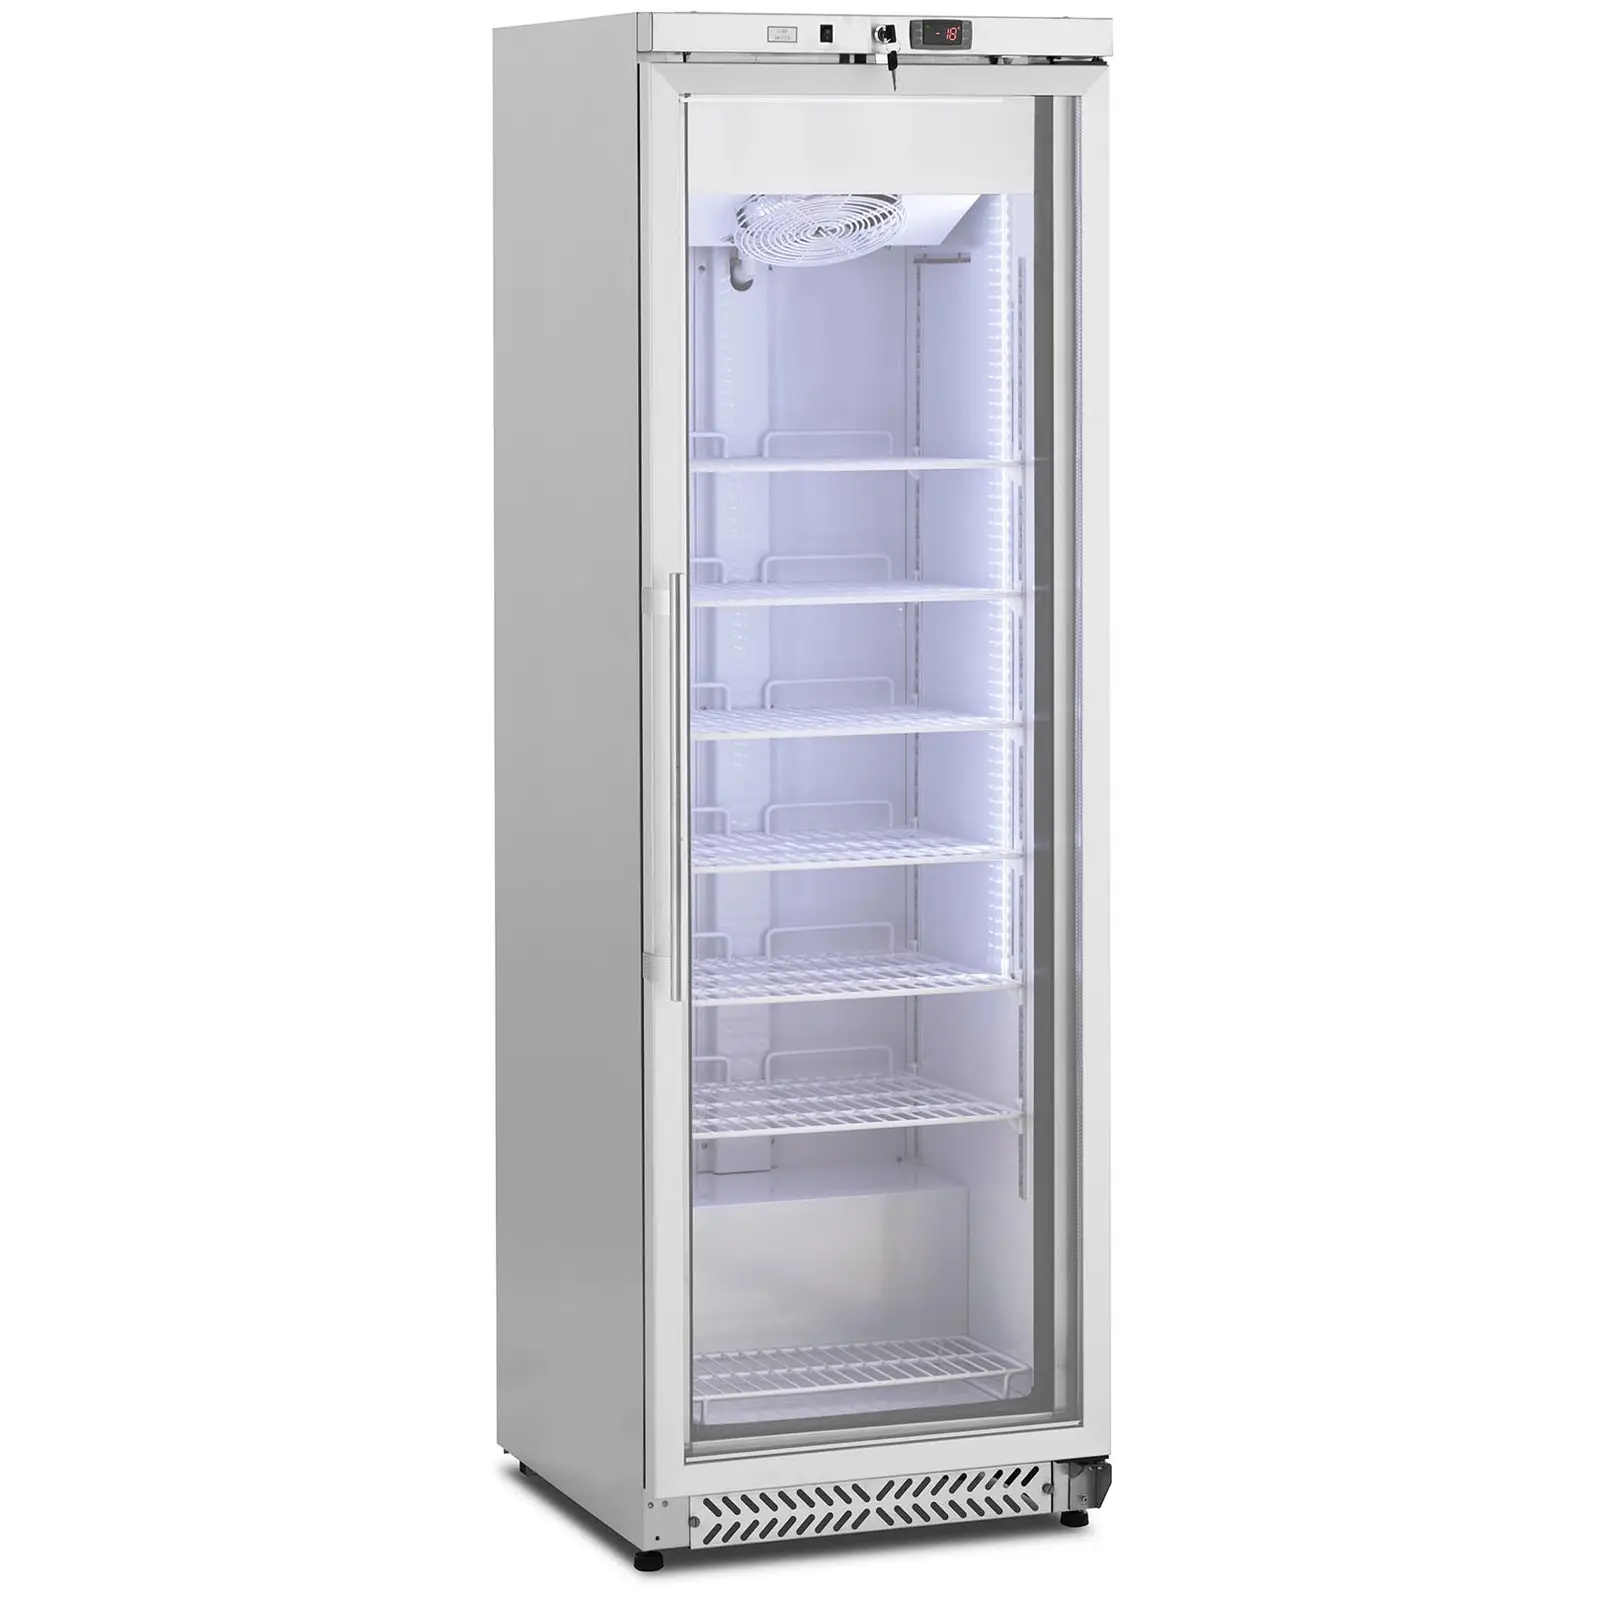 Arca congeladora de gaveta - 380 l - Royal Catering - porta de vidro - prata - refrigerante R290